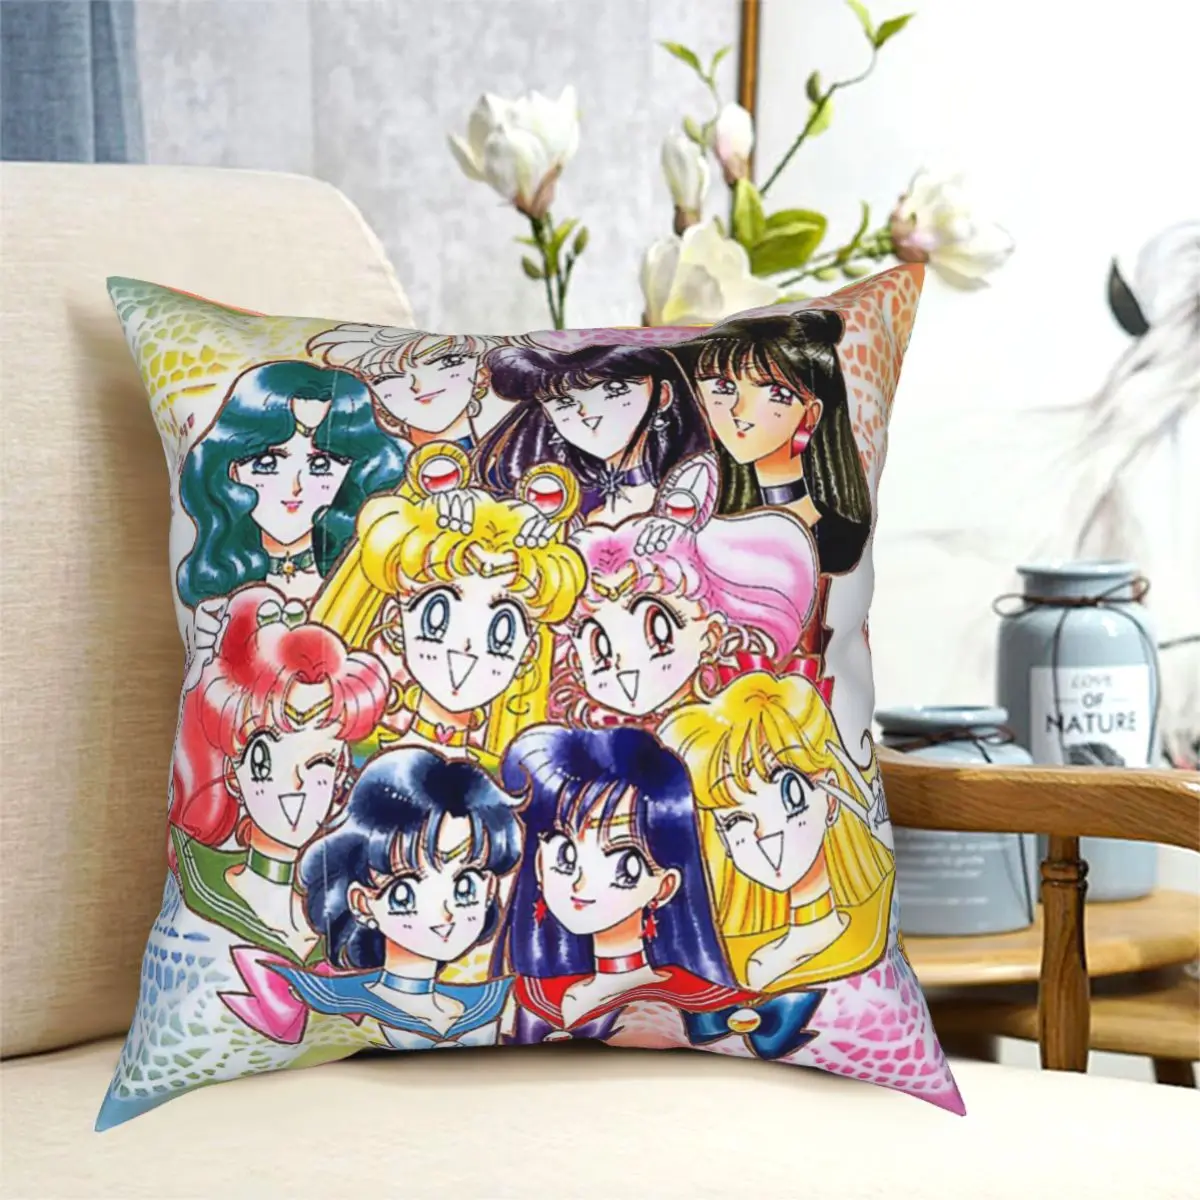 

New Sailor Moon Manga Artbook Throw Pillow Cushion Cover Decorative Pillowcases Case Home Sofa Cushions 40x40,45x45cm